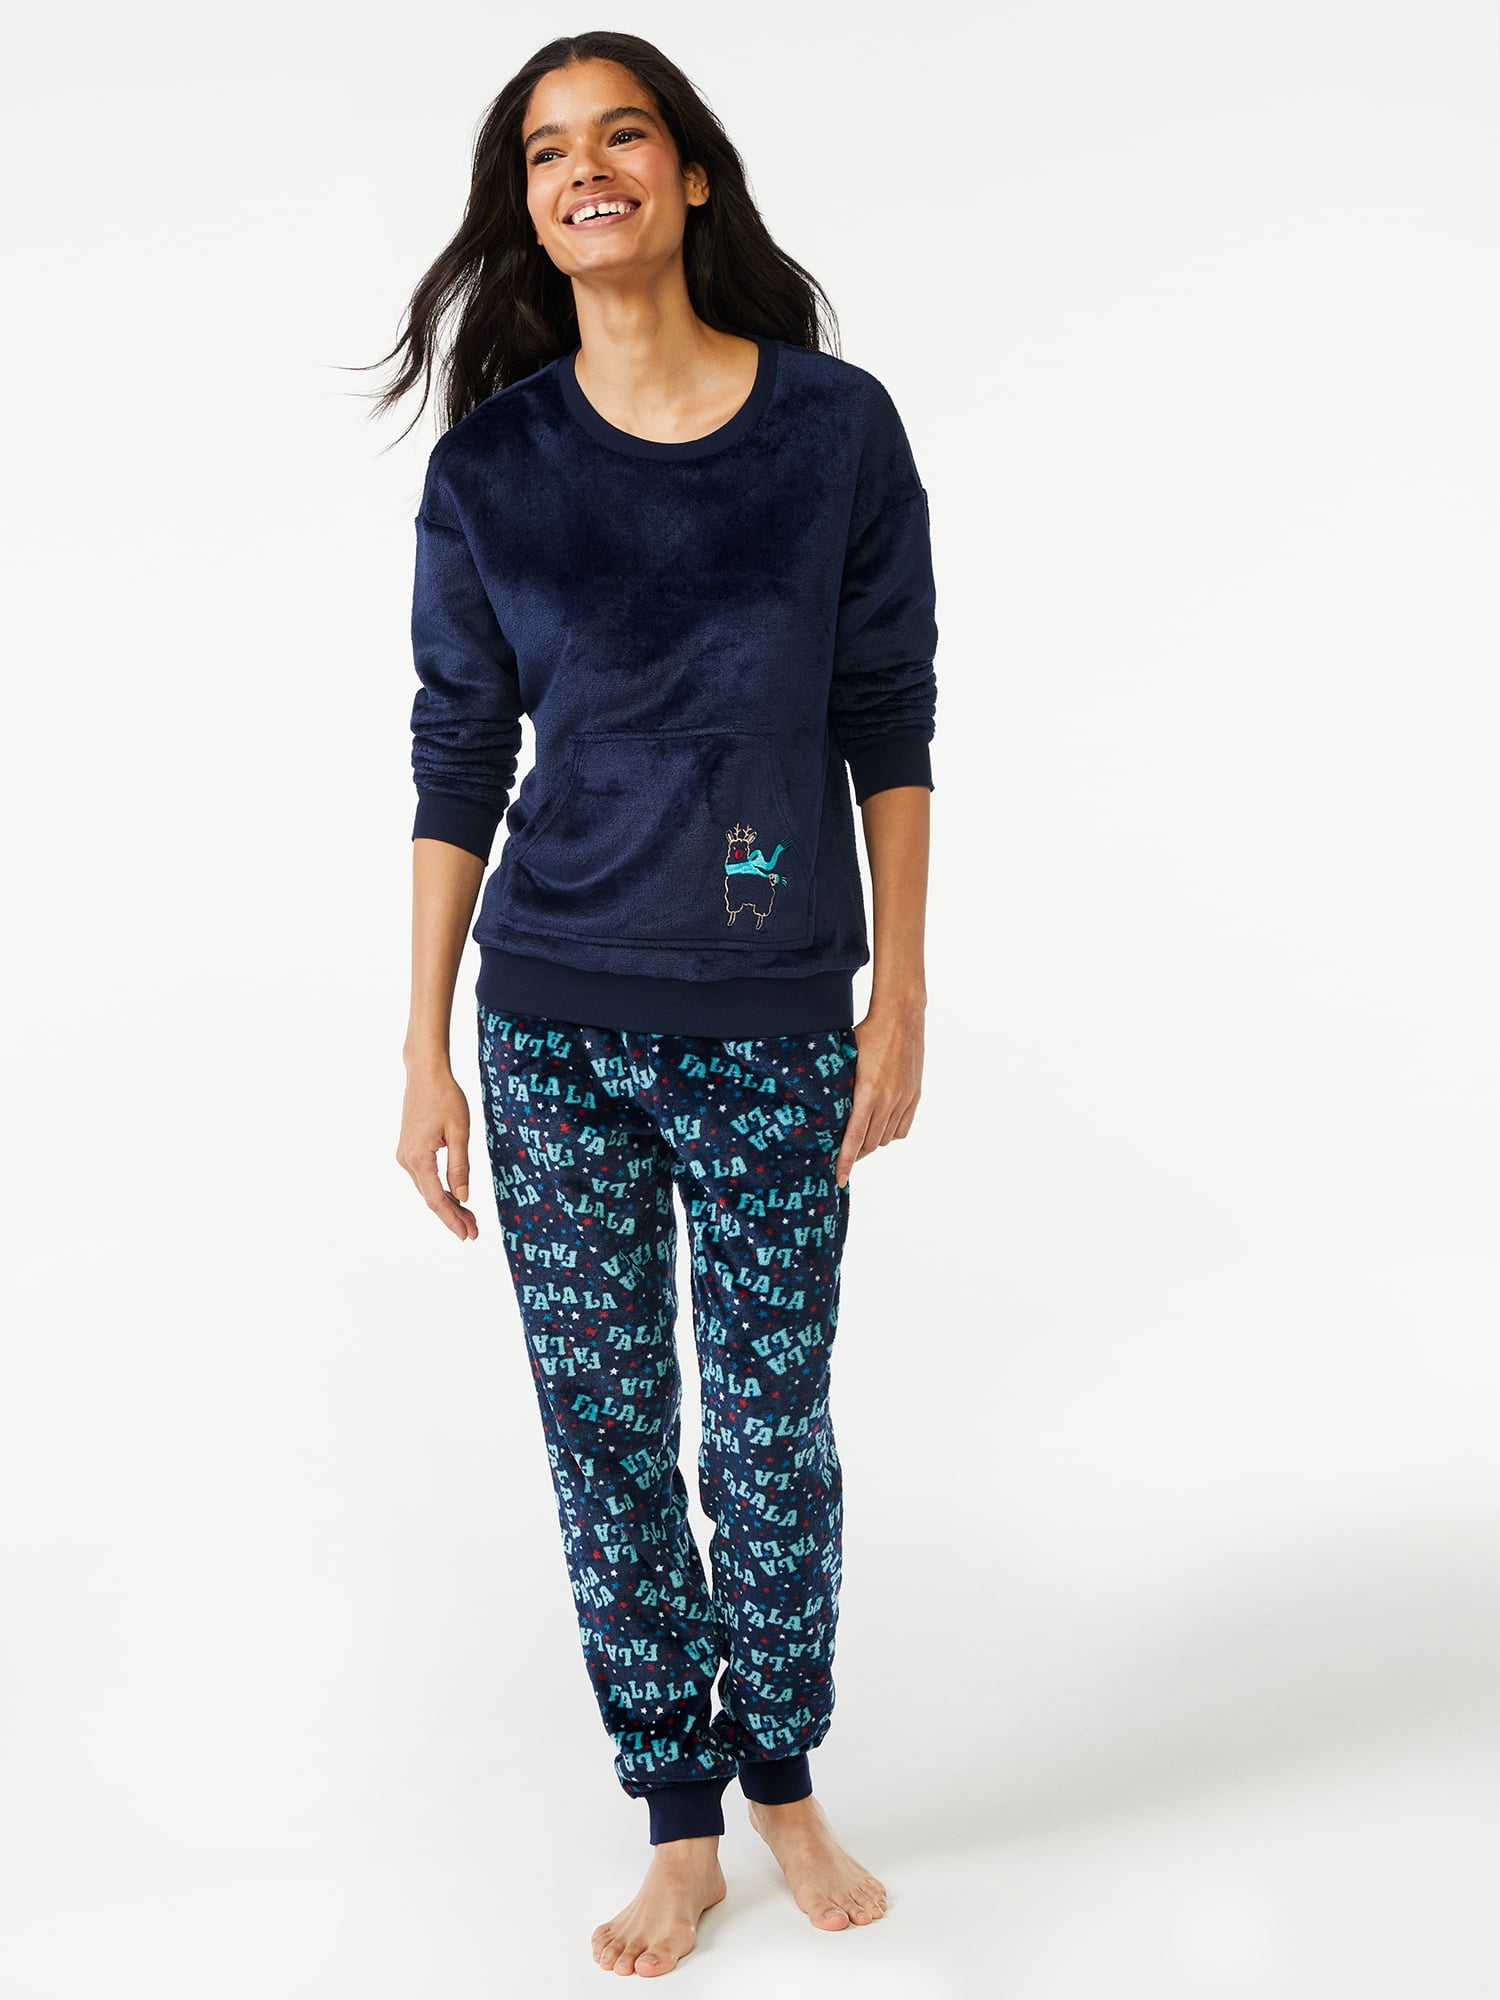 Joyspun Women's Plush Long Sleeve Top and Pants Pajama Set, 2-Piece, Sizes XS to 3X